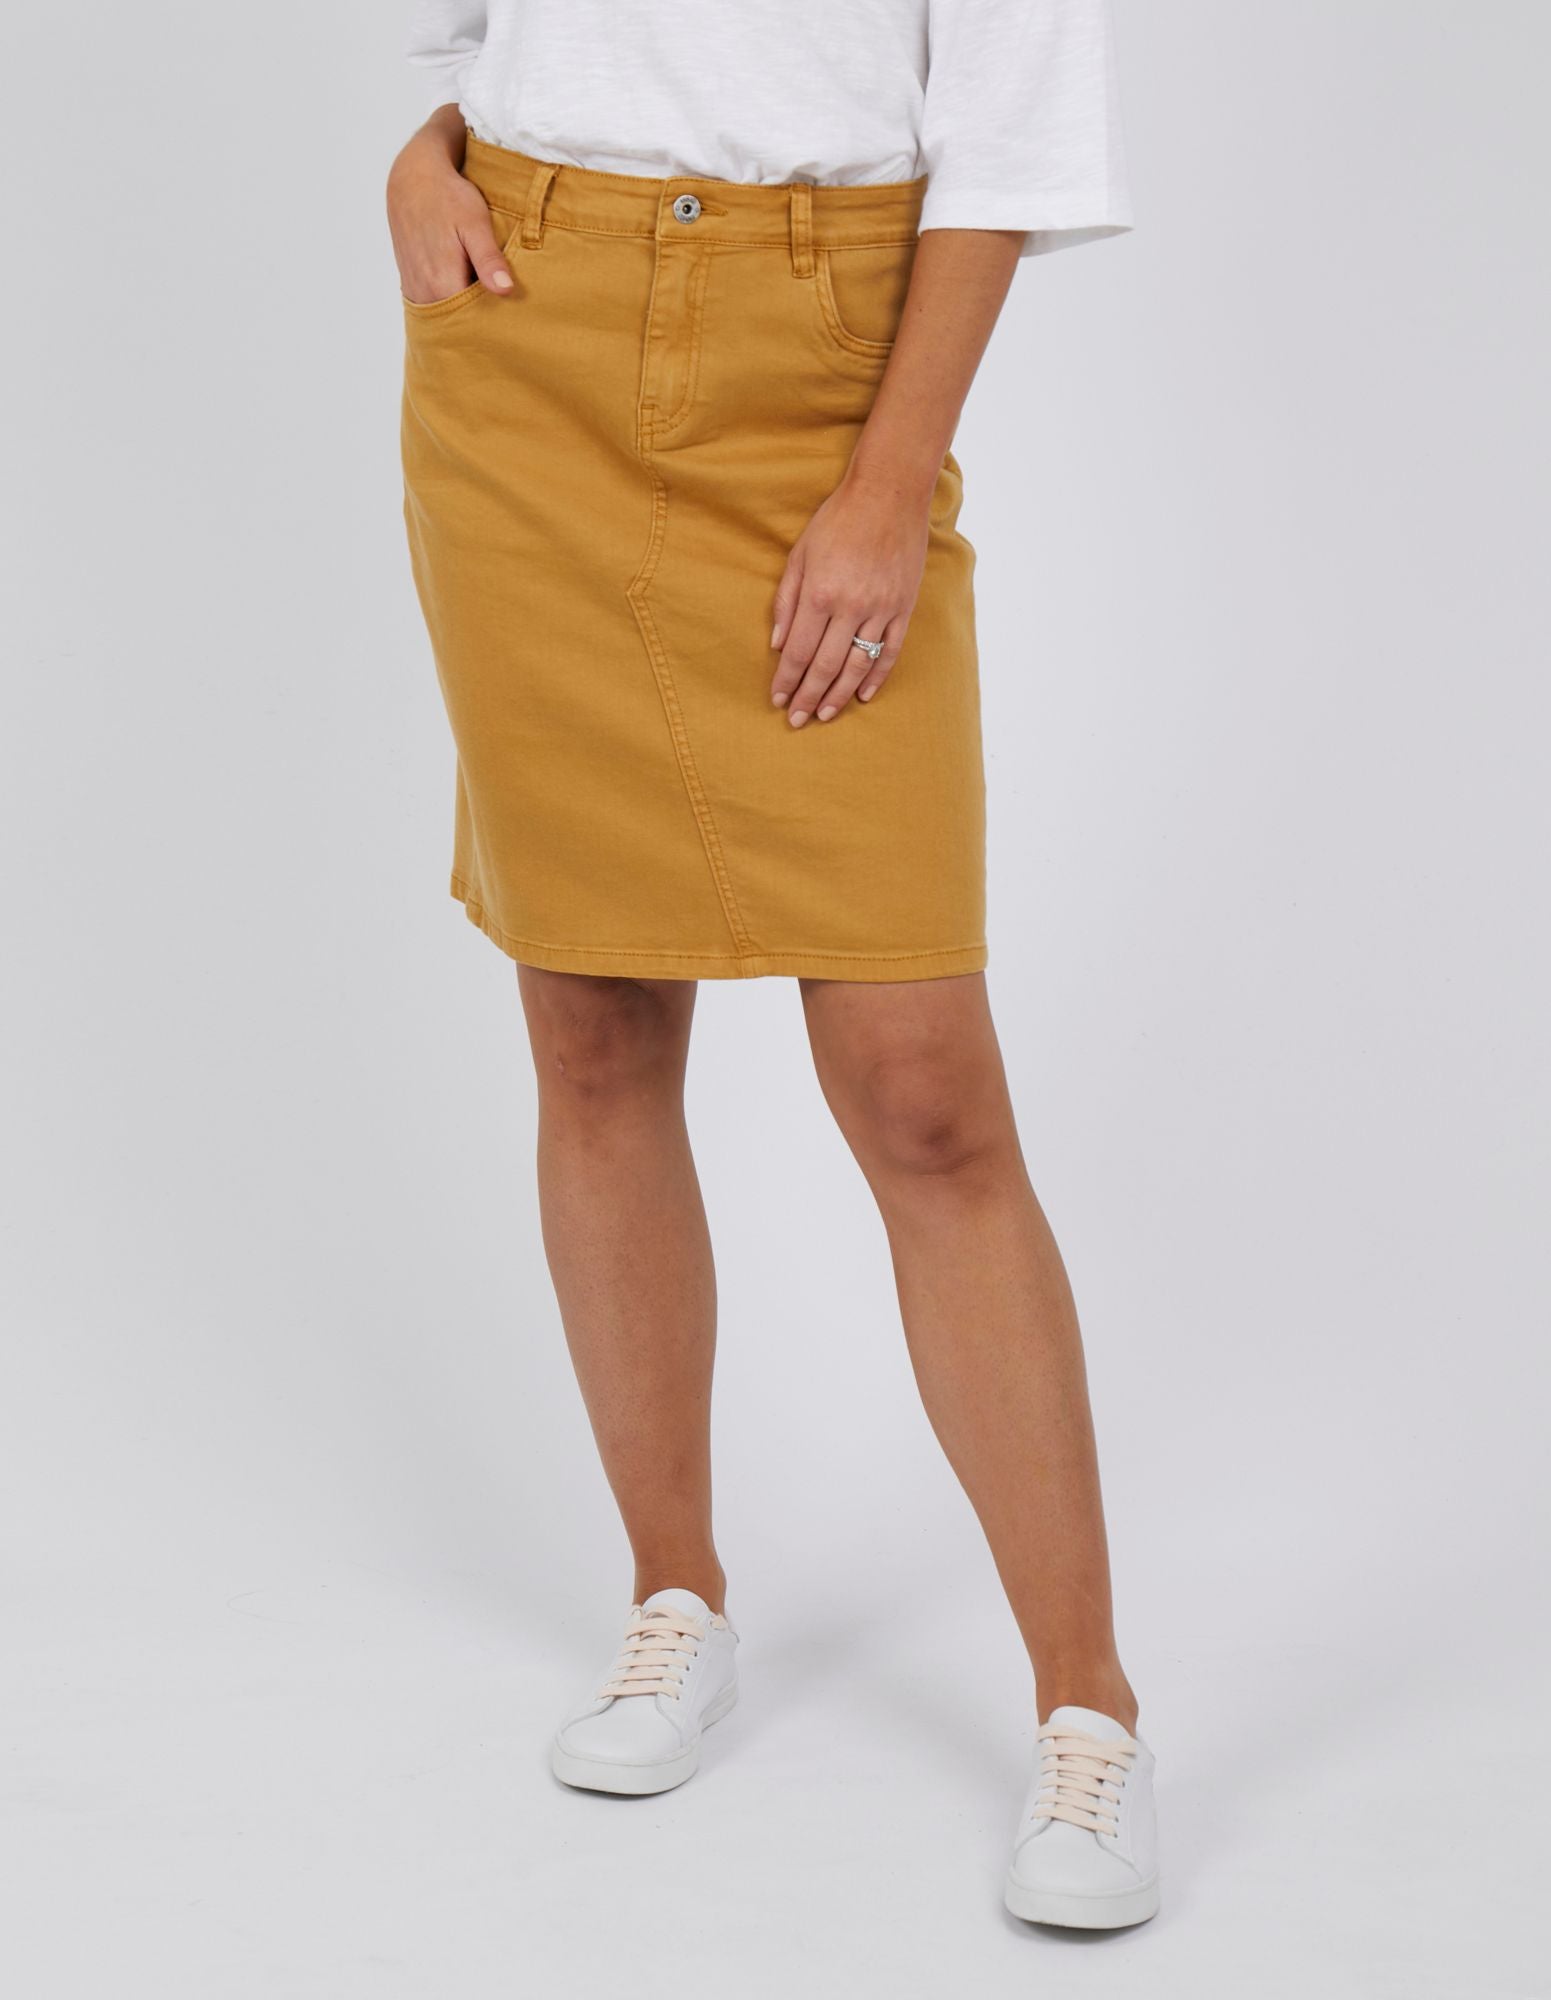 Mustard Yellow Denim Skirt  Mini Skirt  HighWaisted Skirt  Lulus